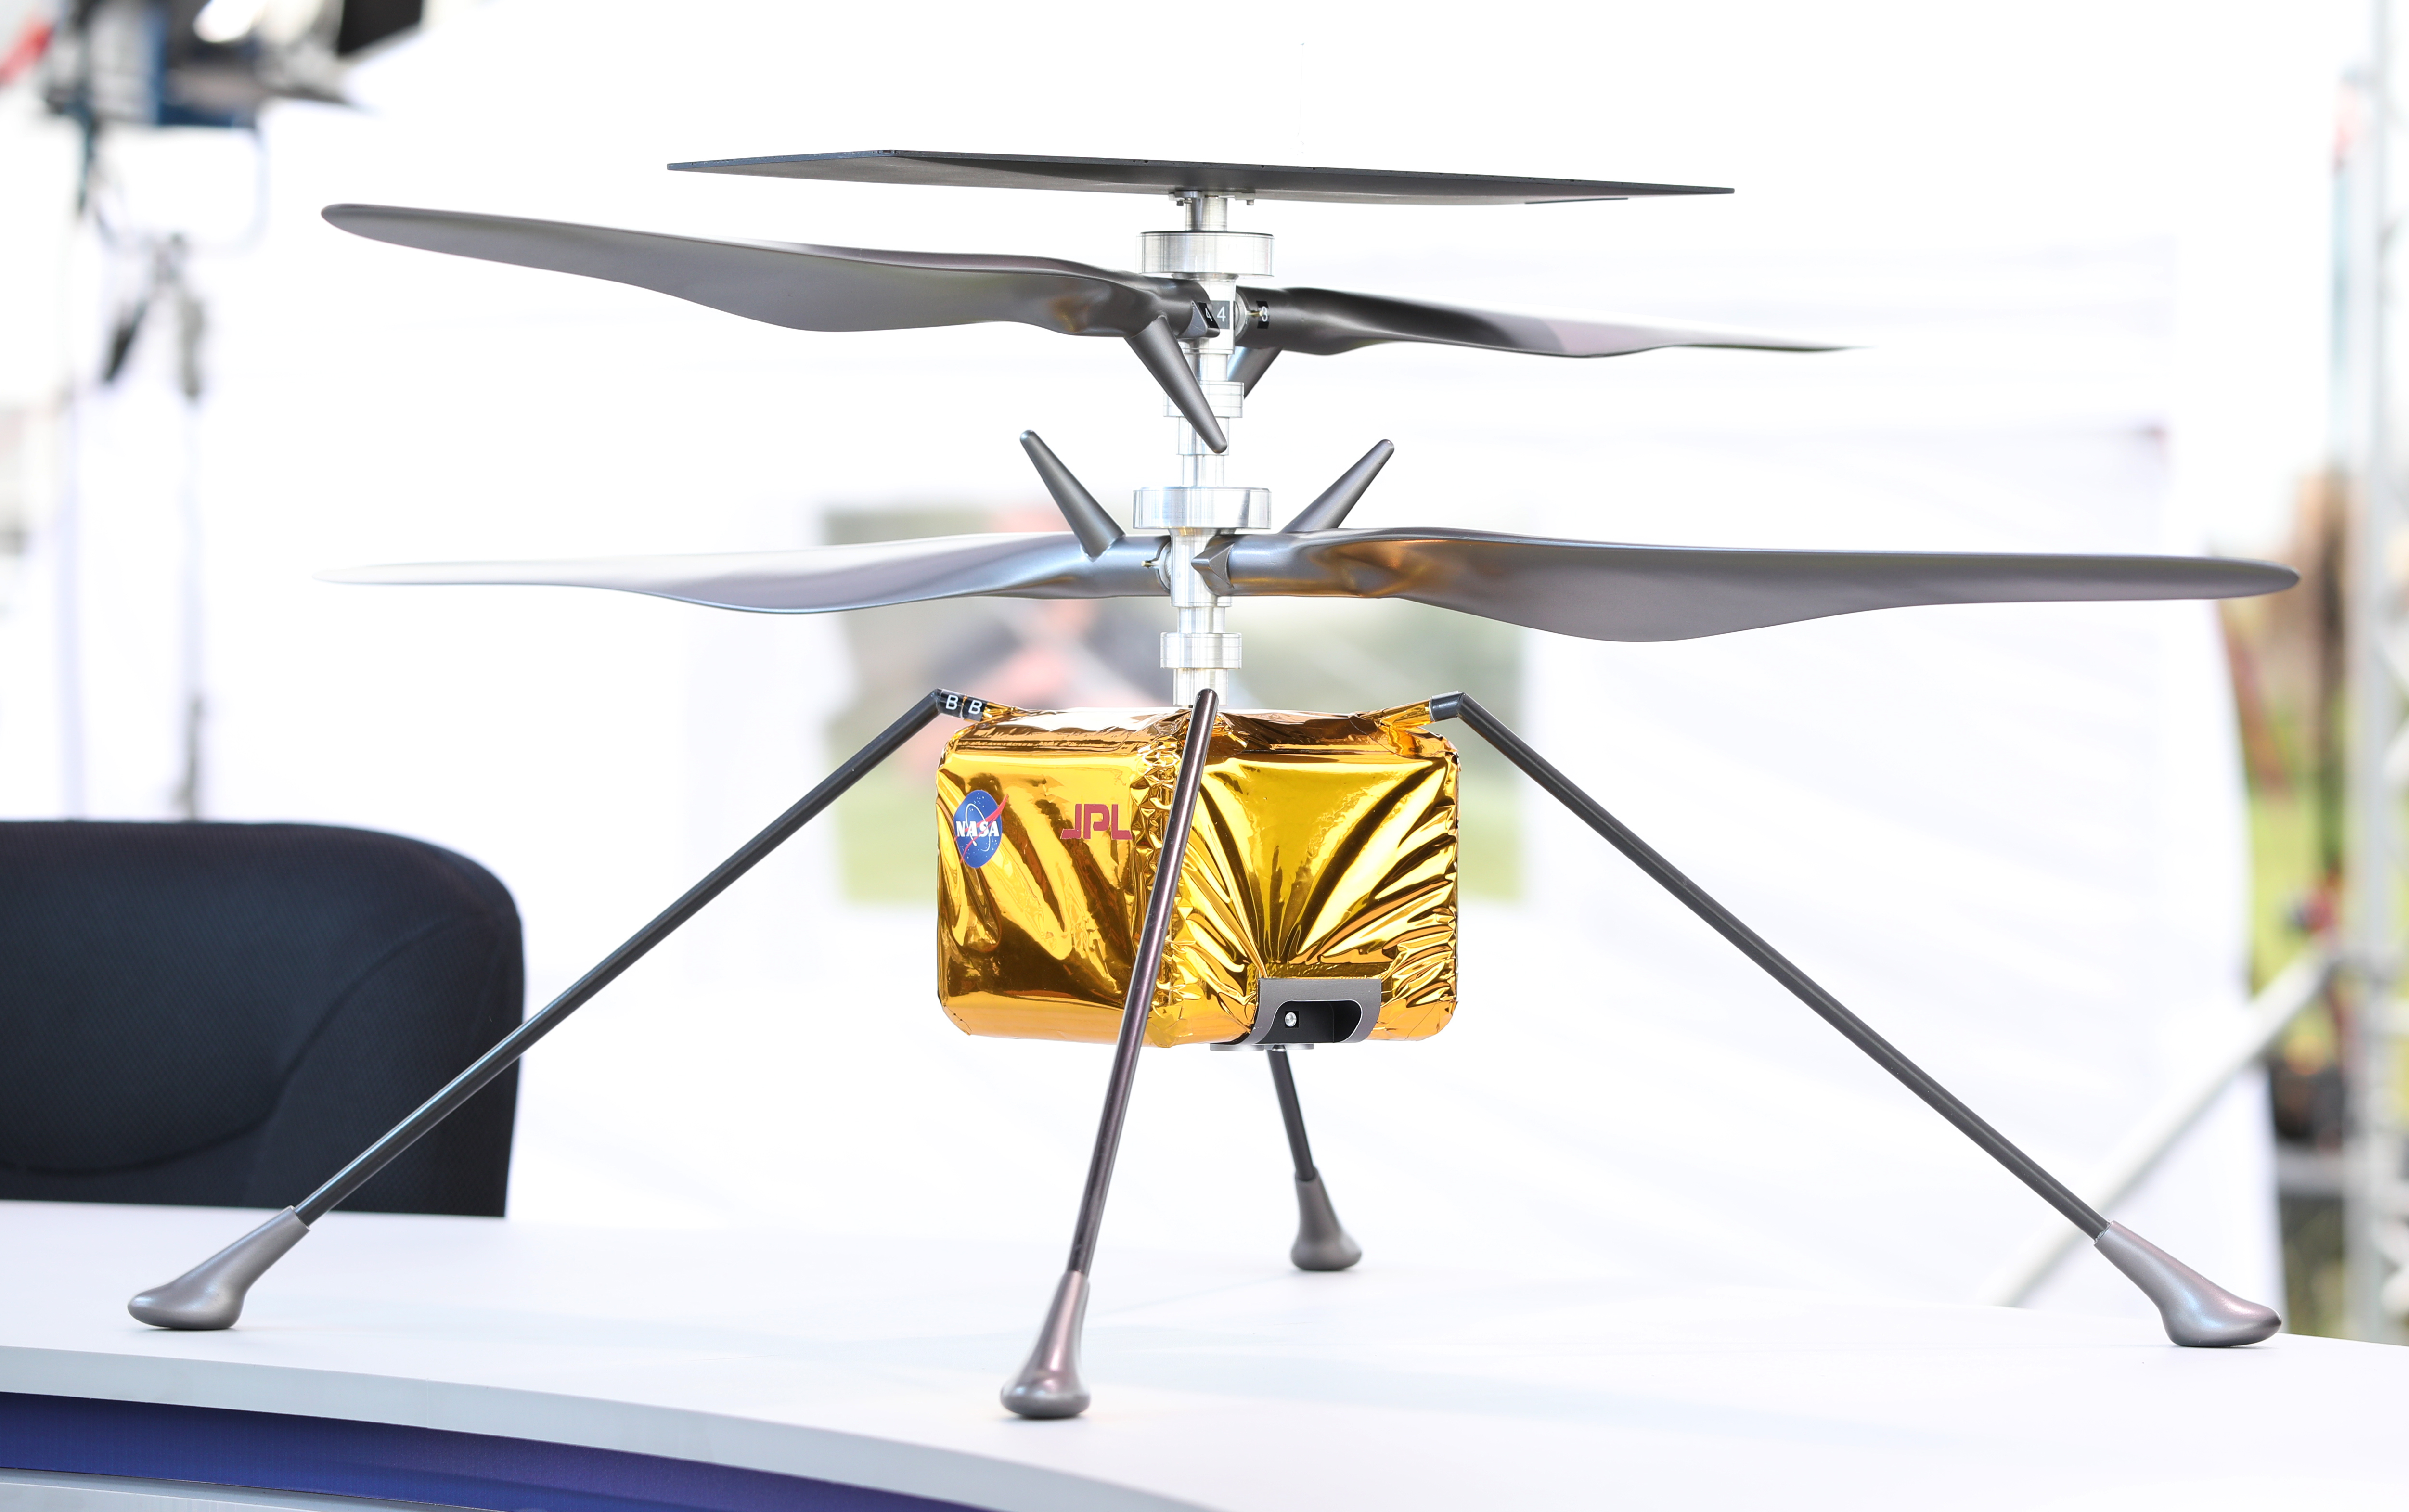 Por primera vez se volará una aeronave sobre el aire de Marte gracias al helicóptero "Ingenuity", que viajará al planeta acoplado al rover y que realizará diferentes pruebas de vuelo en una gravedad que es dos tercios menor que la de la Tierra. (Gregg Newton / Gregg Newton / AFP)